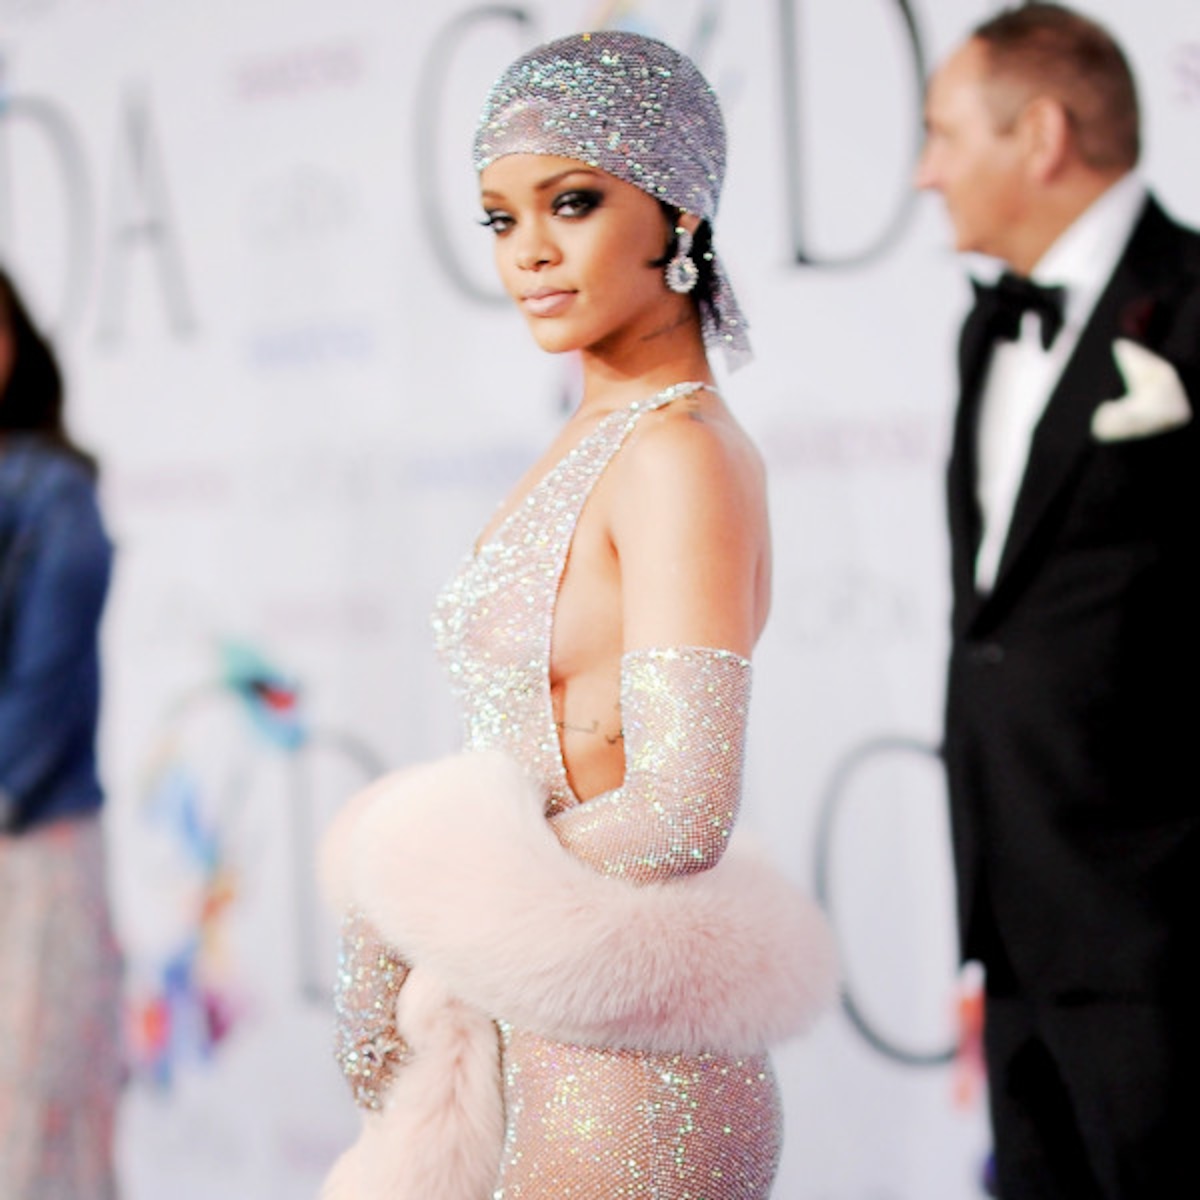 Rihanna Has One Regret About Her Groundbreaking 2014 CFDA Look